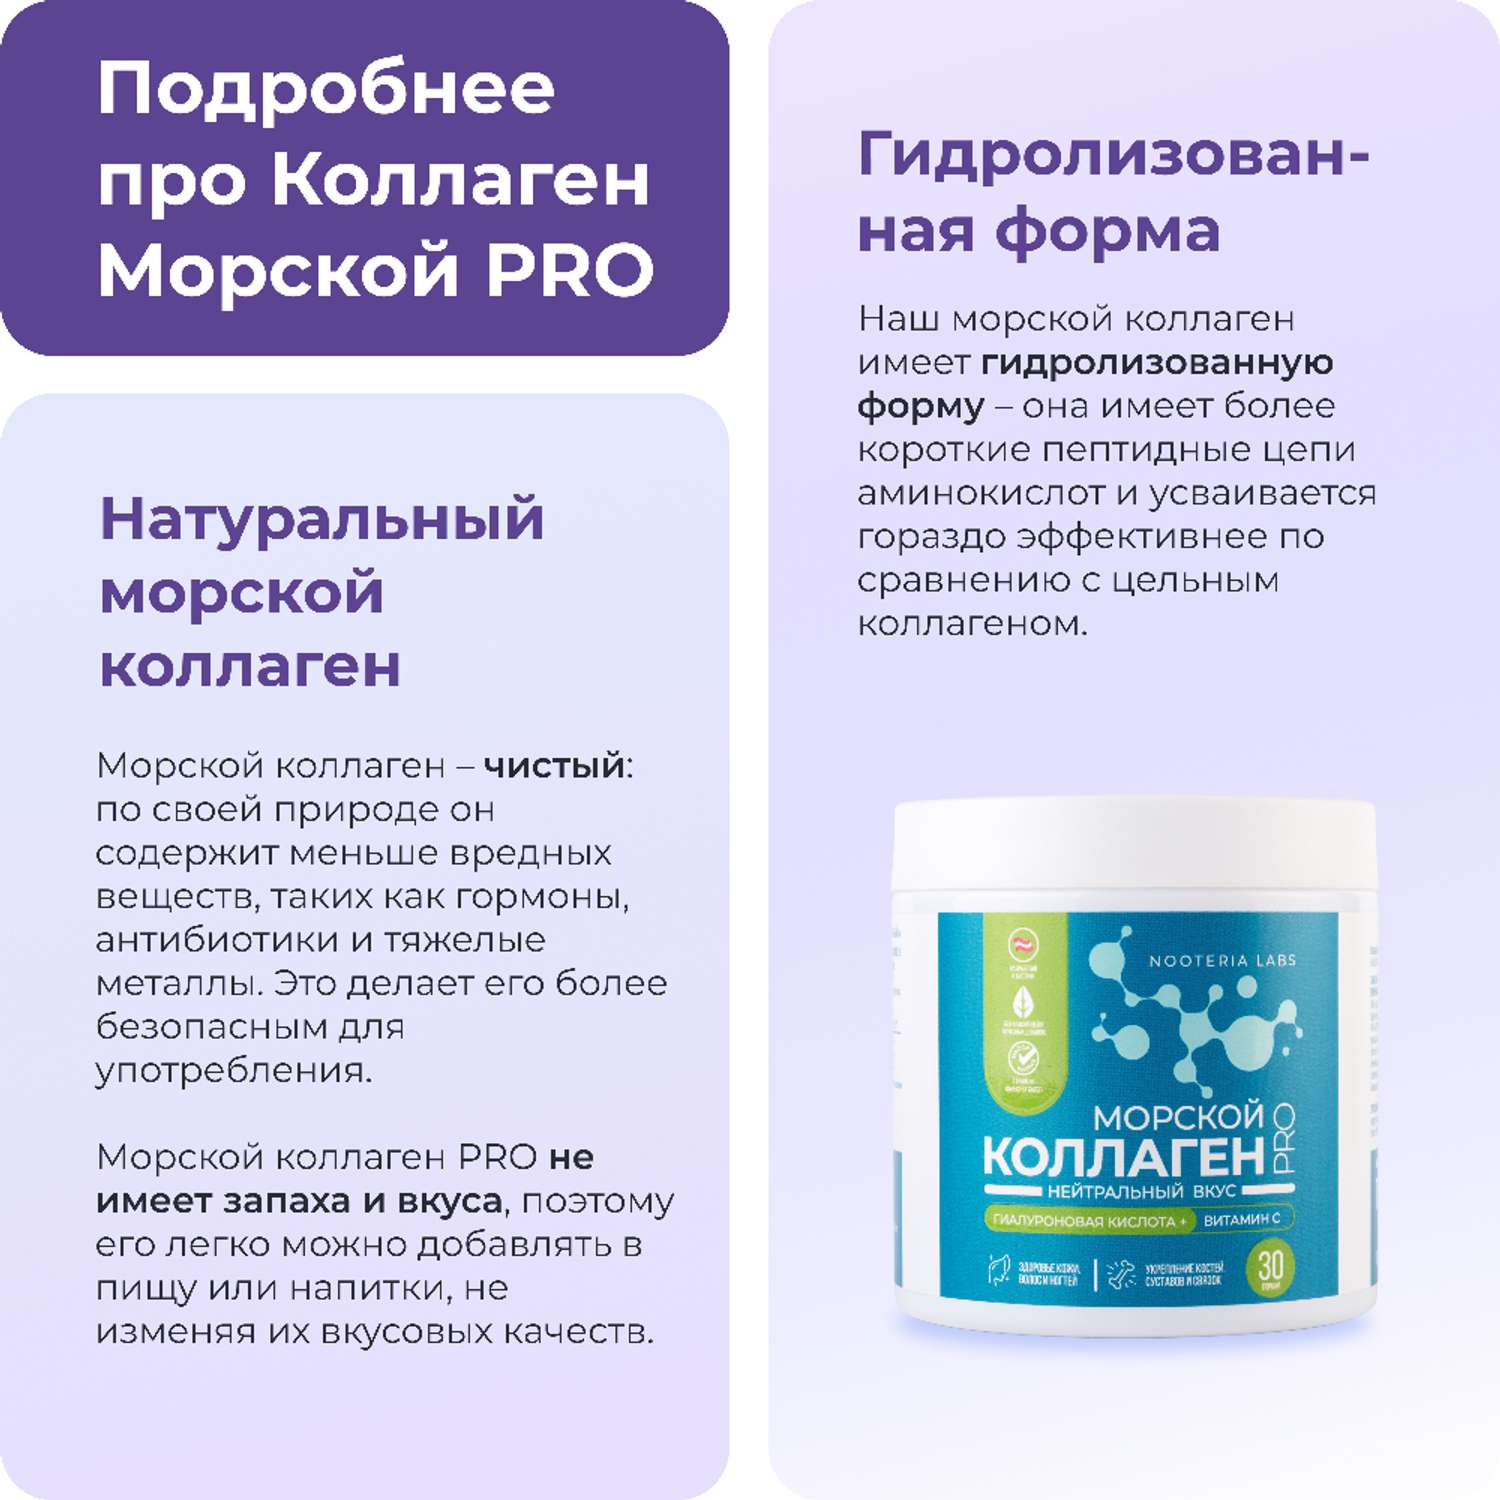 Комплексная пищевая добавка Nooteria Labs Коллаген Морской Pro с витамином С и гиалуроновой кислотой - фото 3